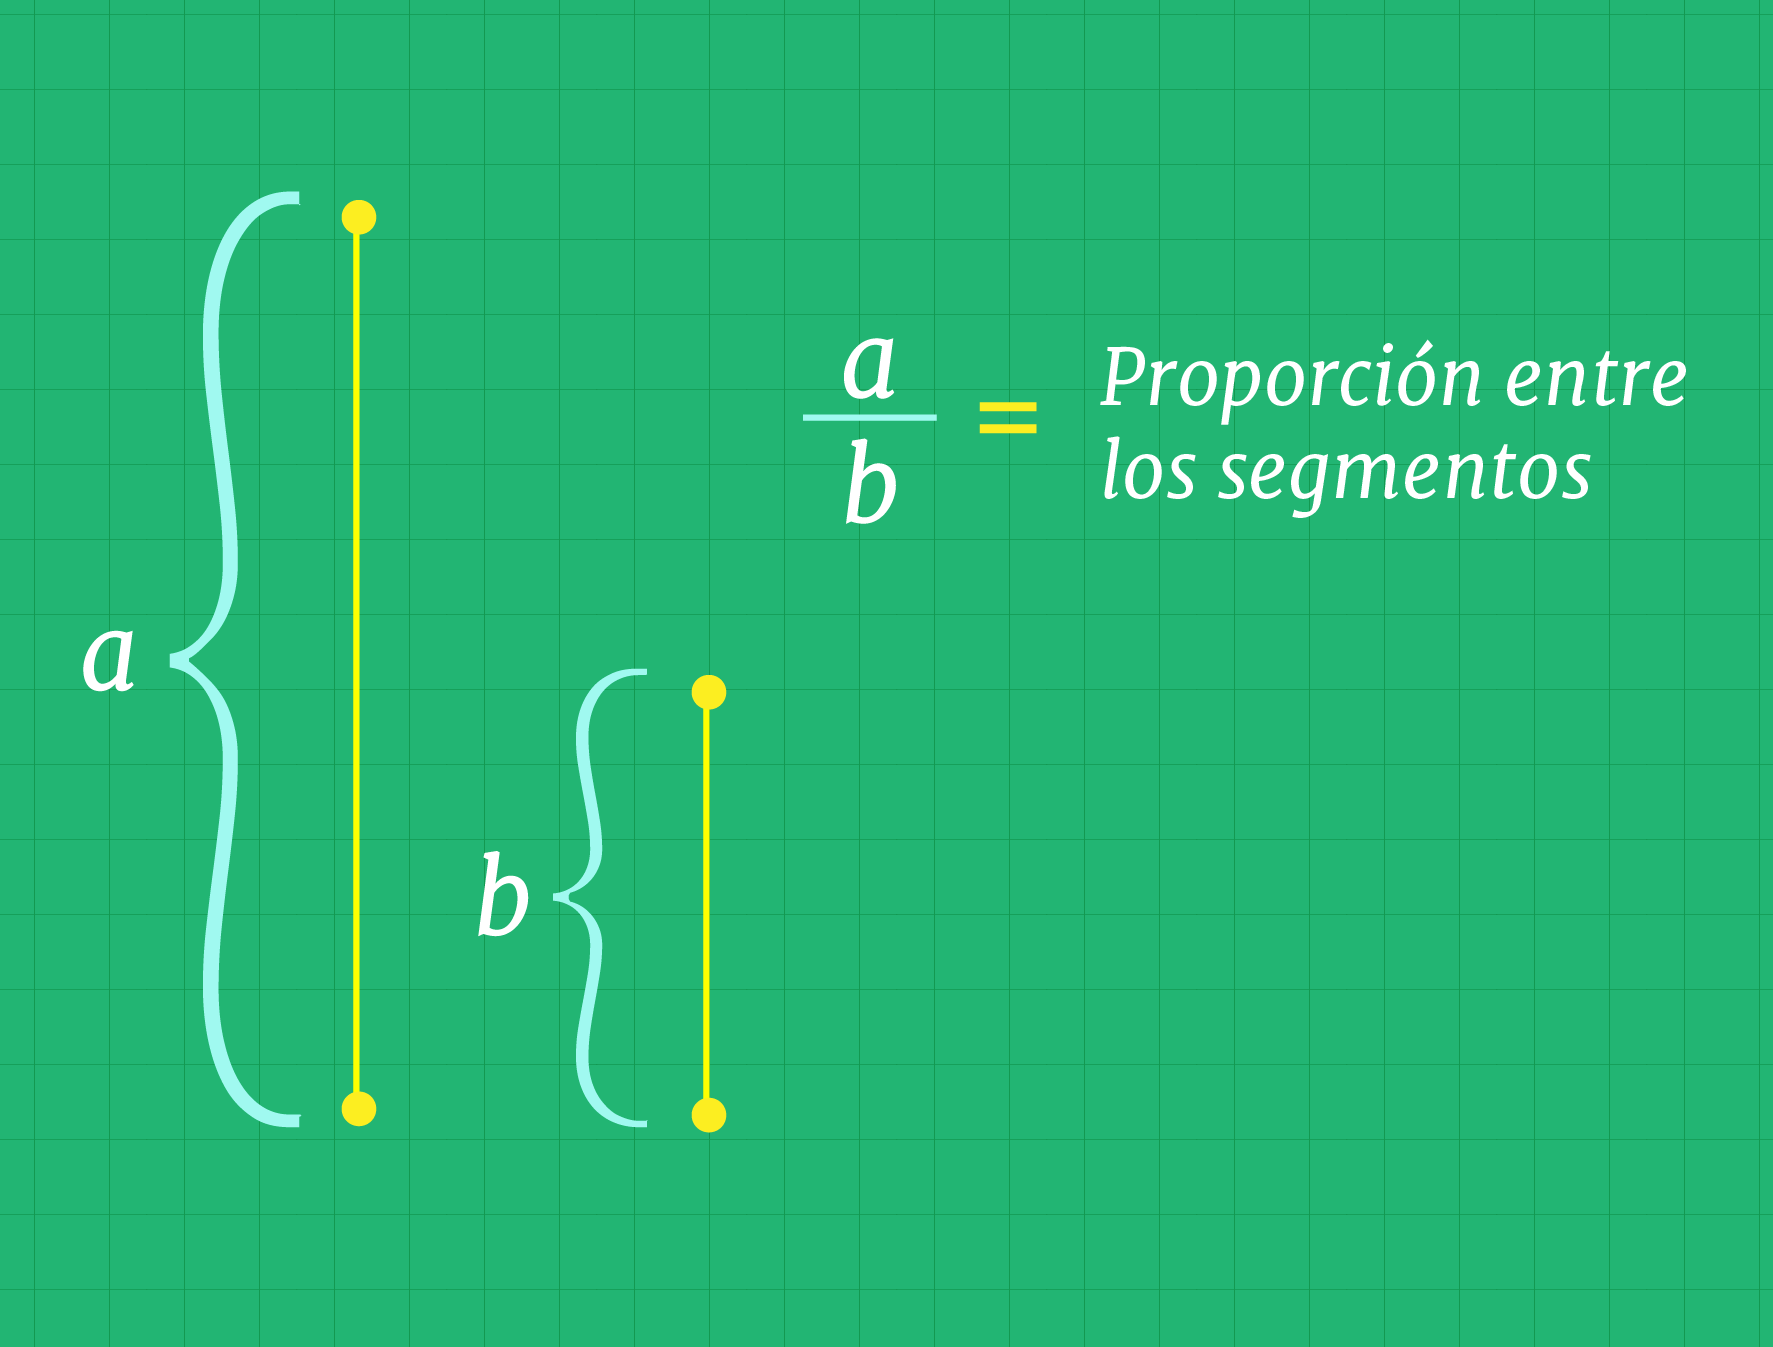 Proporción entre los segmentos a y b